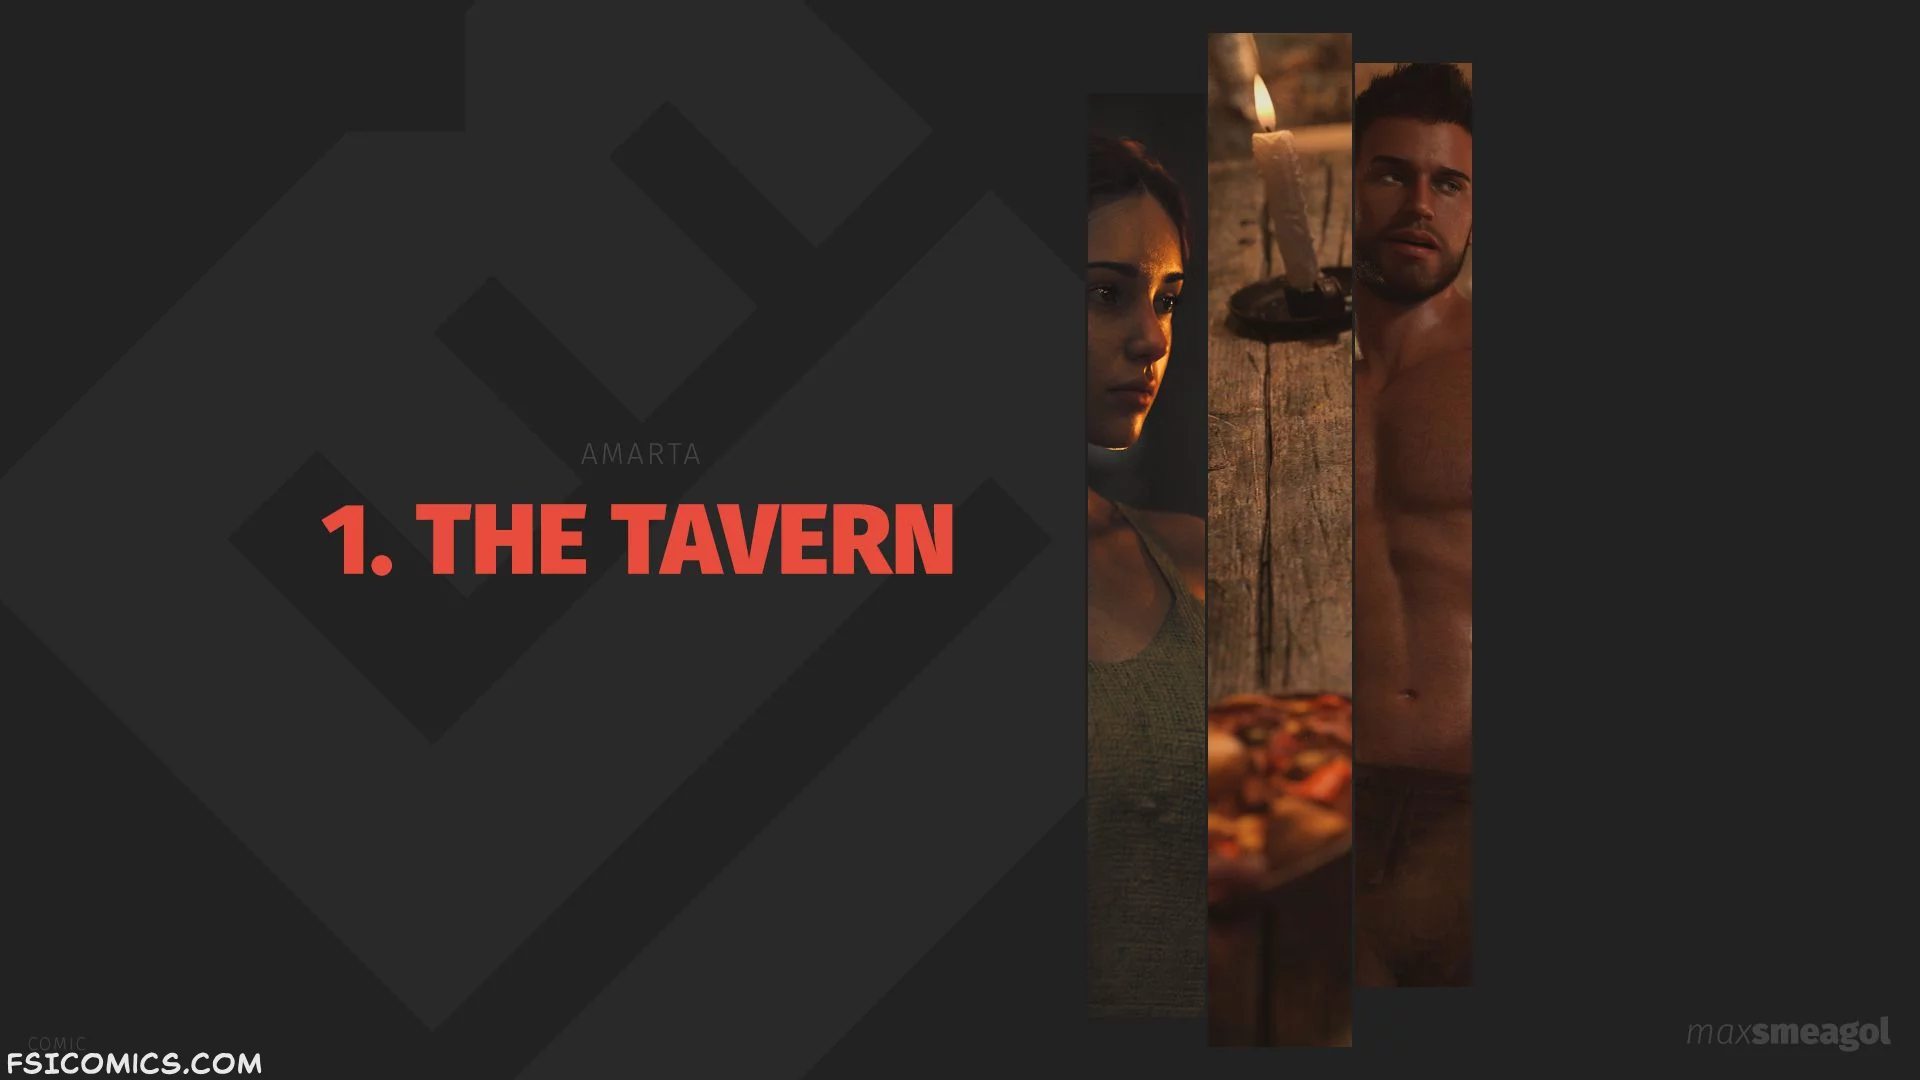 The Tavern Chapter 1 - MaxSmeagol - 39 - FSIComics